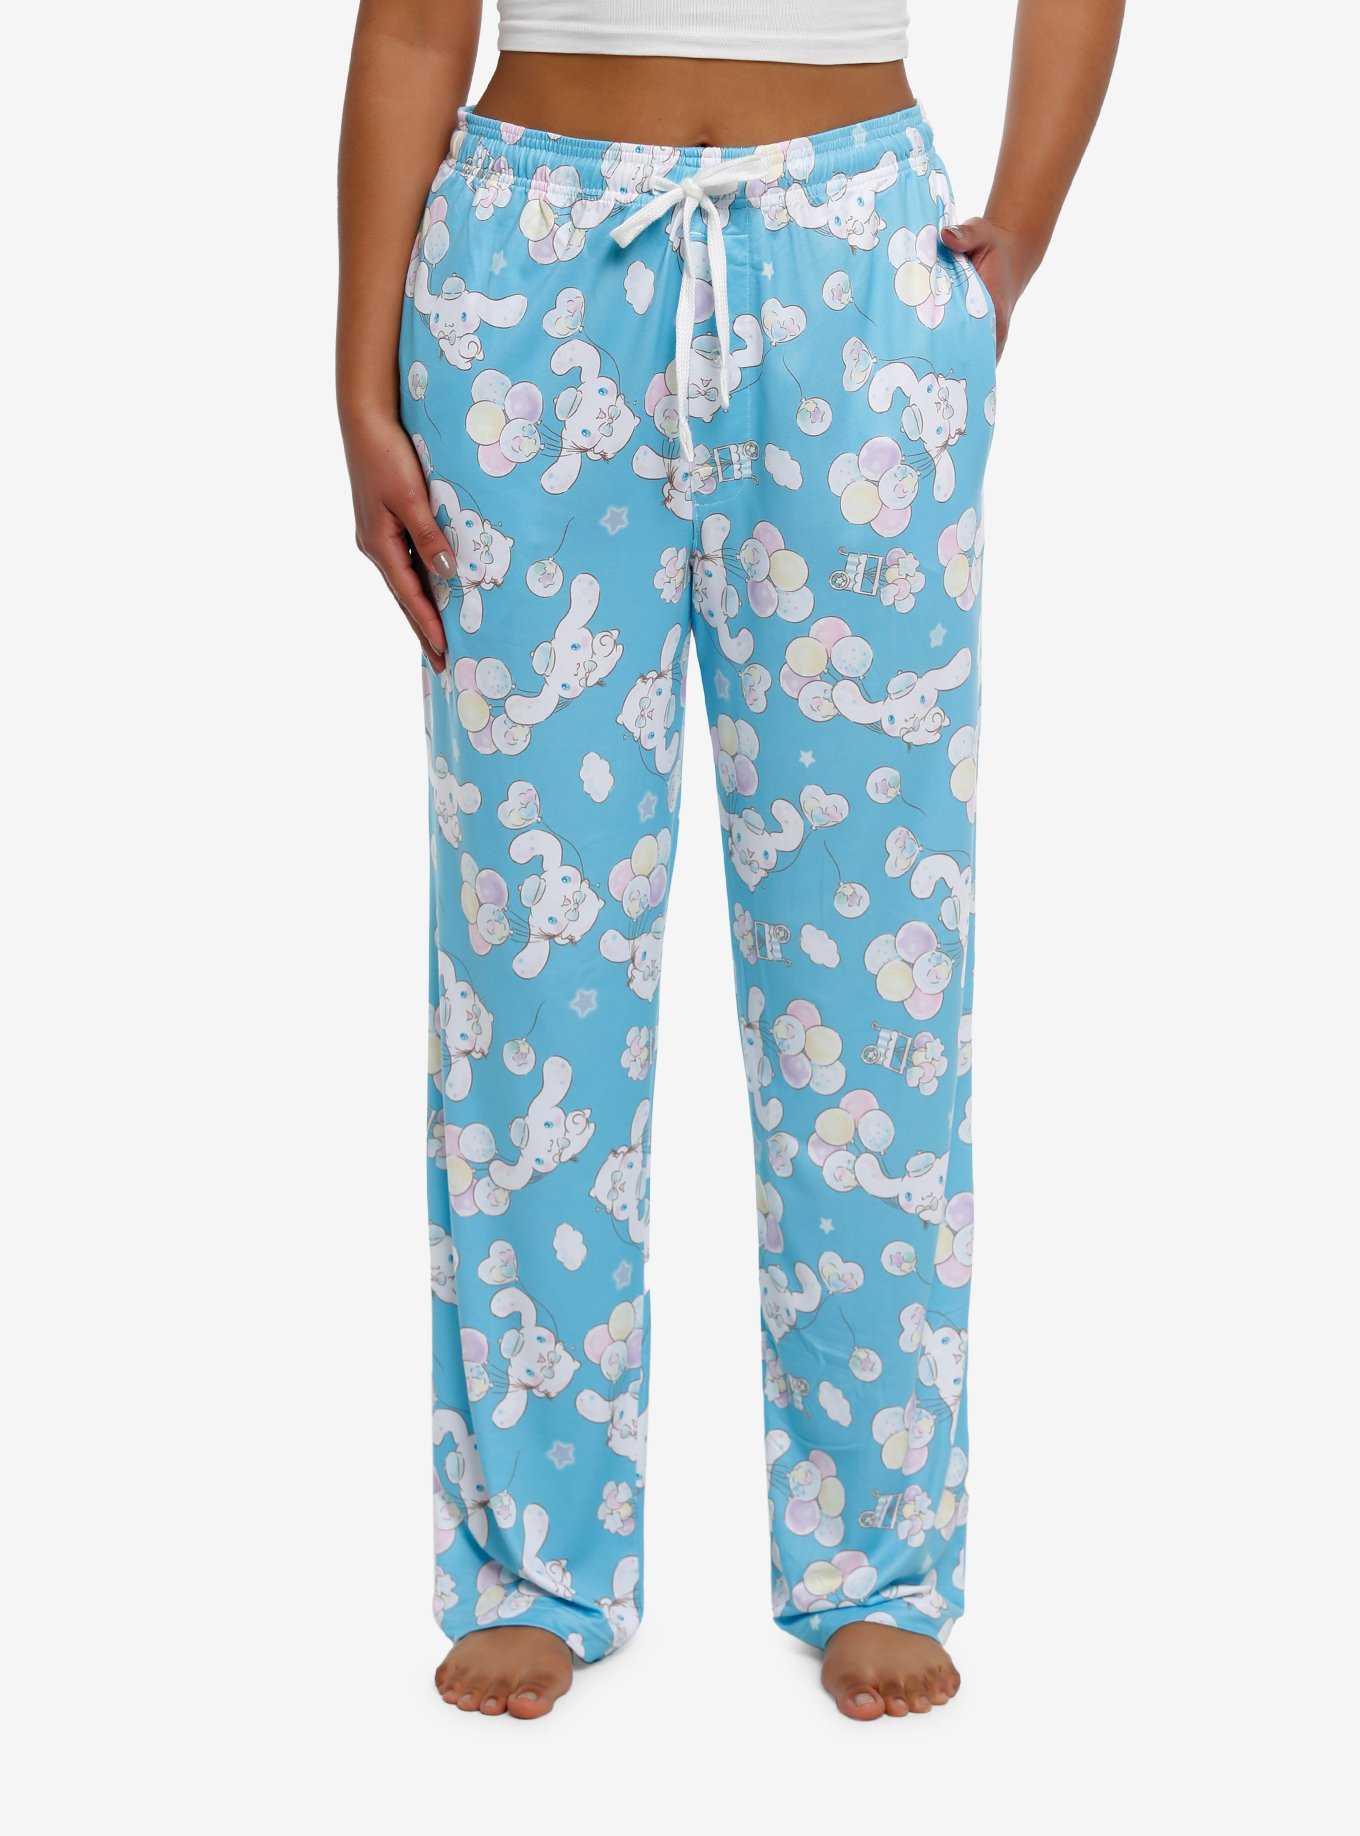 Girls Anime & Disney Pajamas, Sleepwear, & PJs